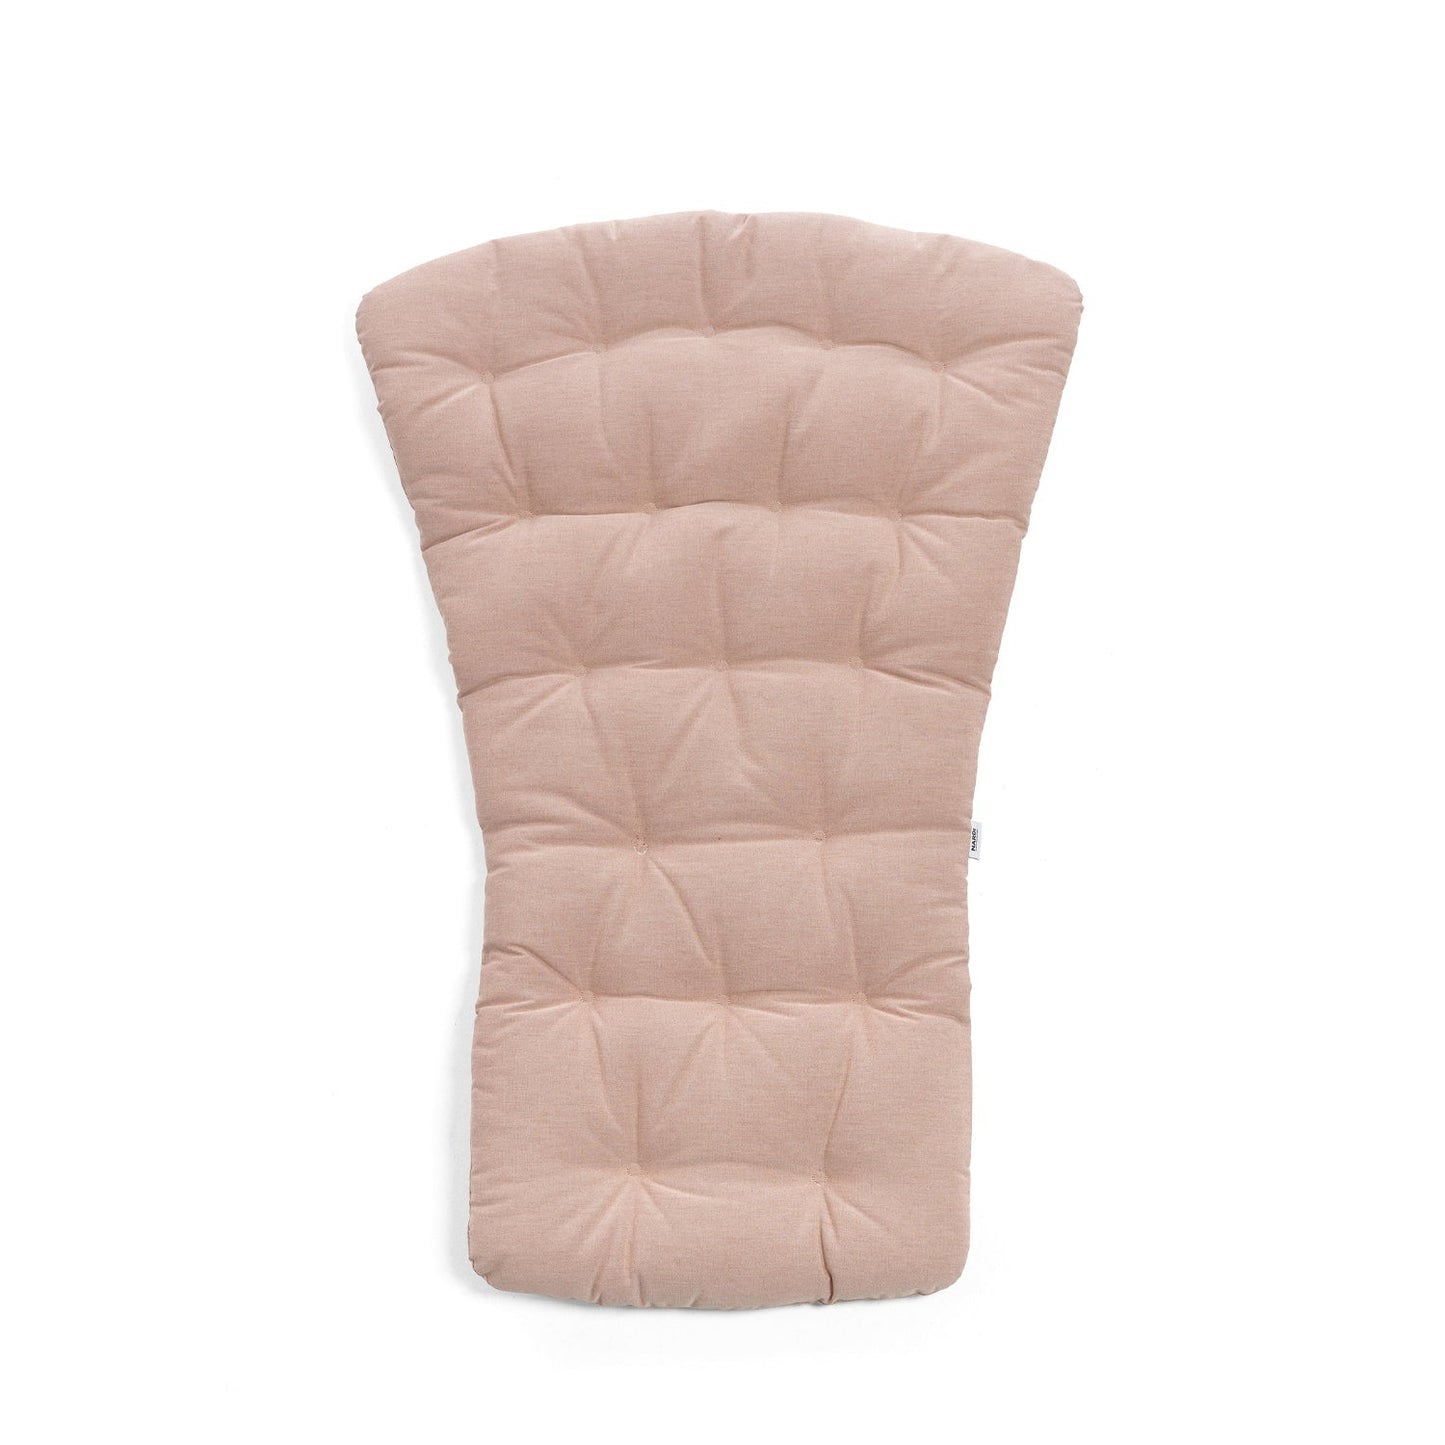 Folio Comfort Cushion In Rose